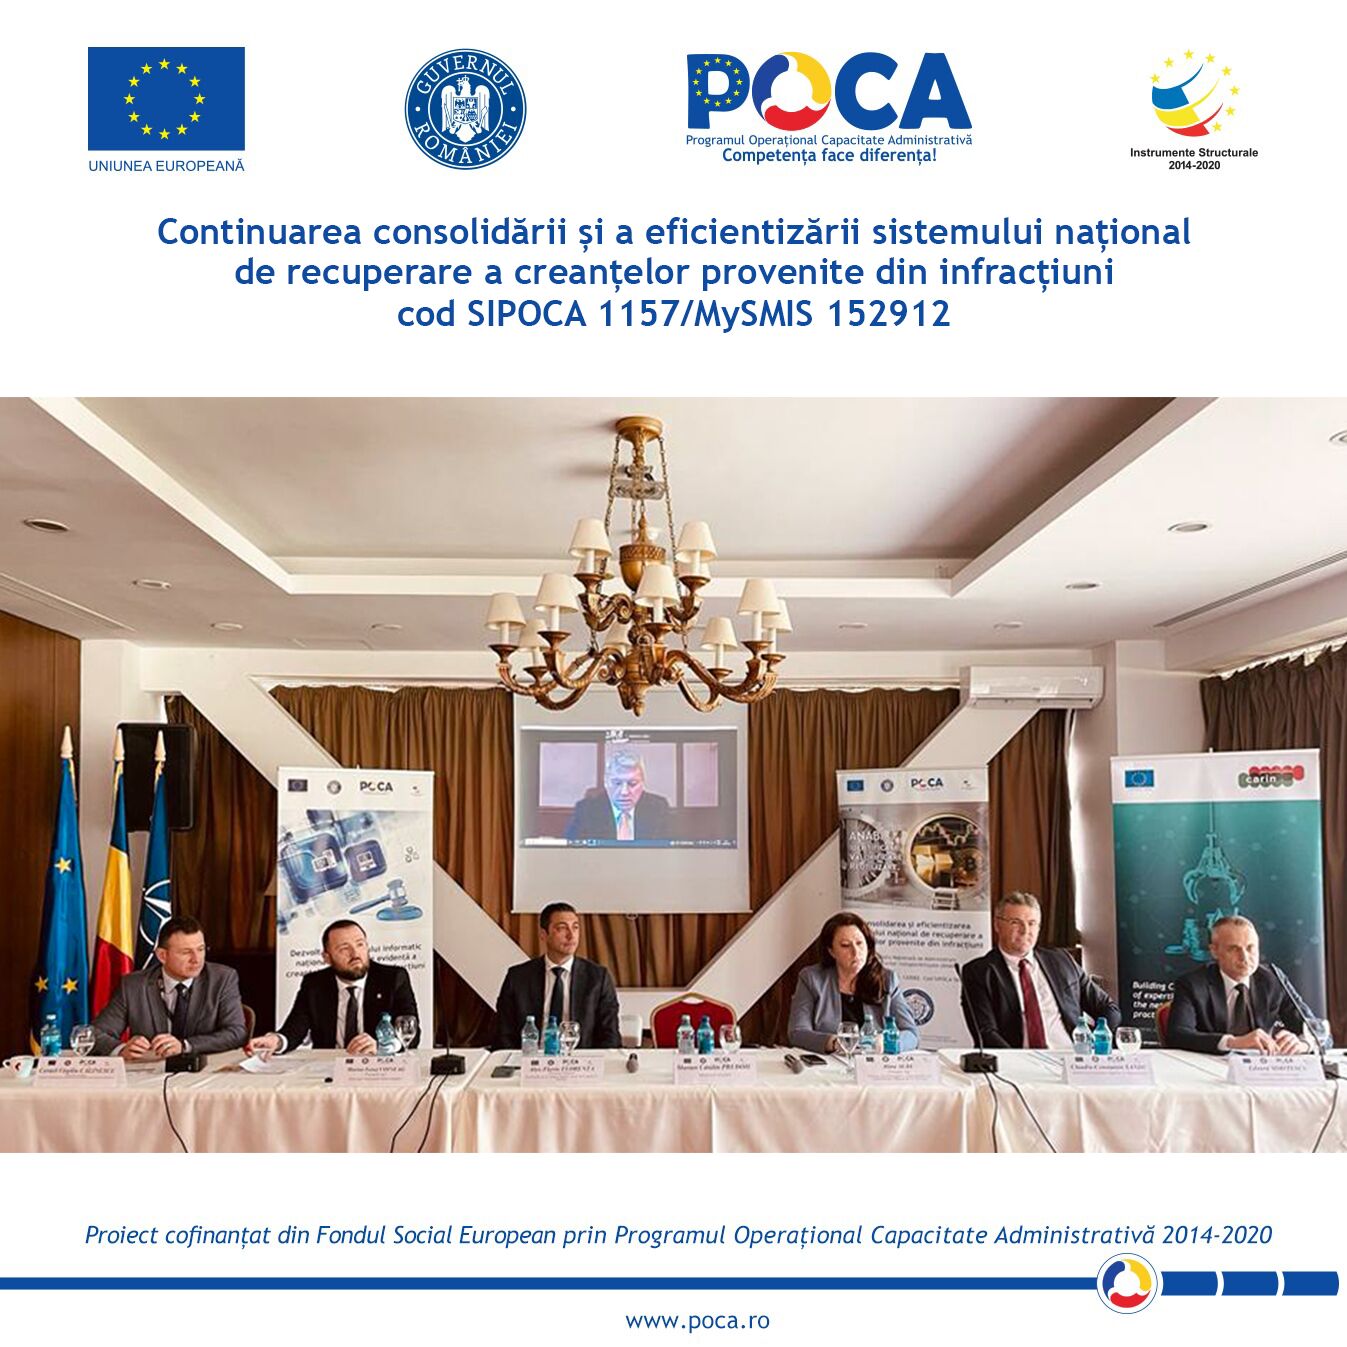 Conferința națională organizată la Brașov în cadrul proiectului  „Continuarea consolidării și a eficientizării sistemului național  de recuperare a creanțelor provenite din infracțiuni”  cod SIPOCA 1157, cod MySMIS 152912